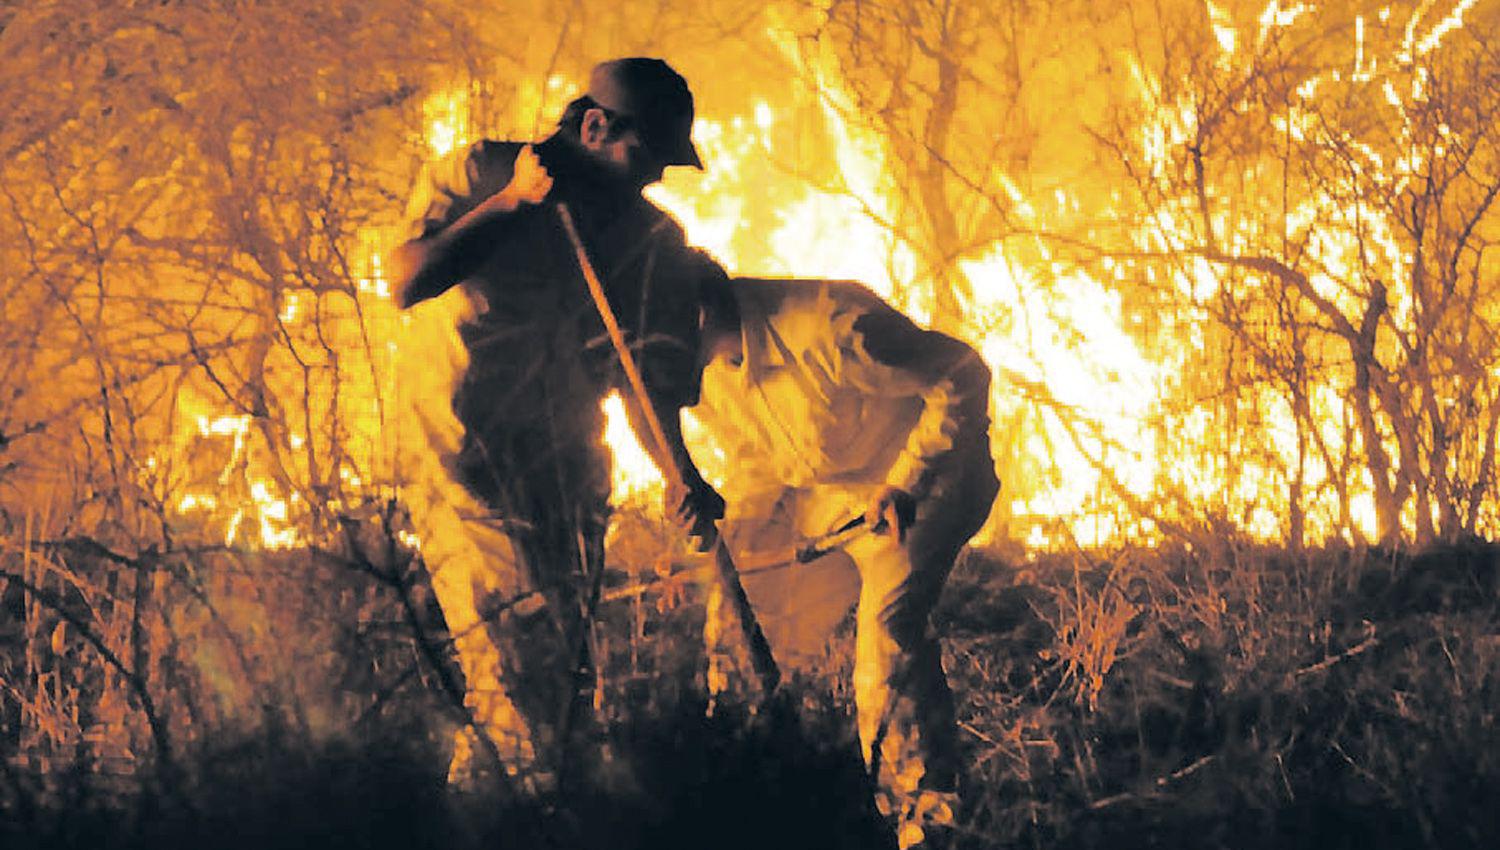 El fuego movilizó a empleados baqueanos bomberos y hasta
policías El trabajo fue intenso durante tres días